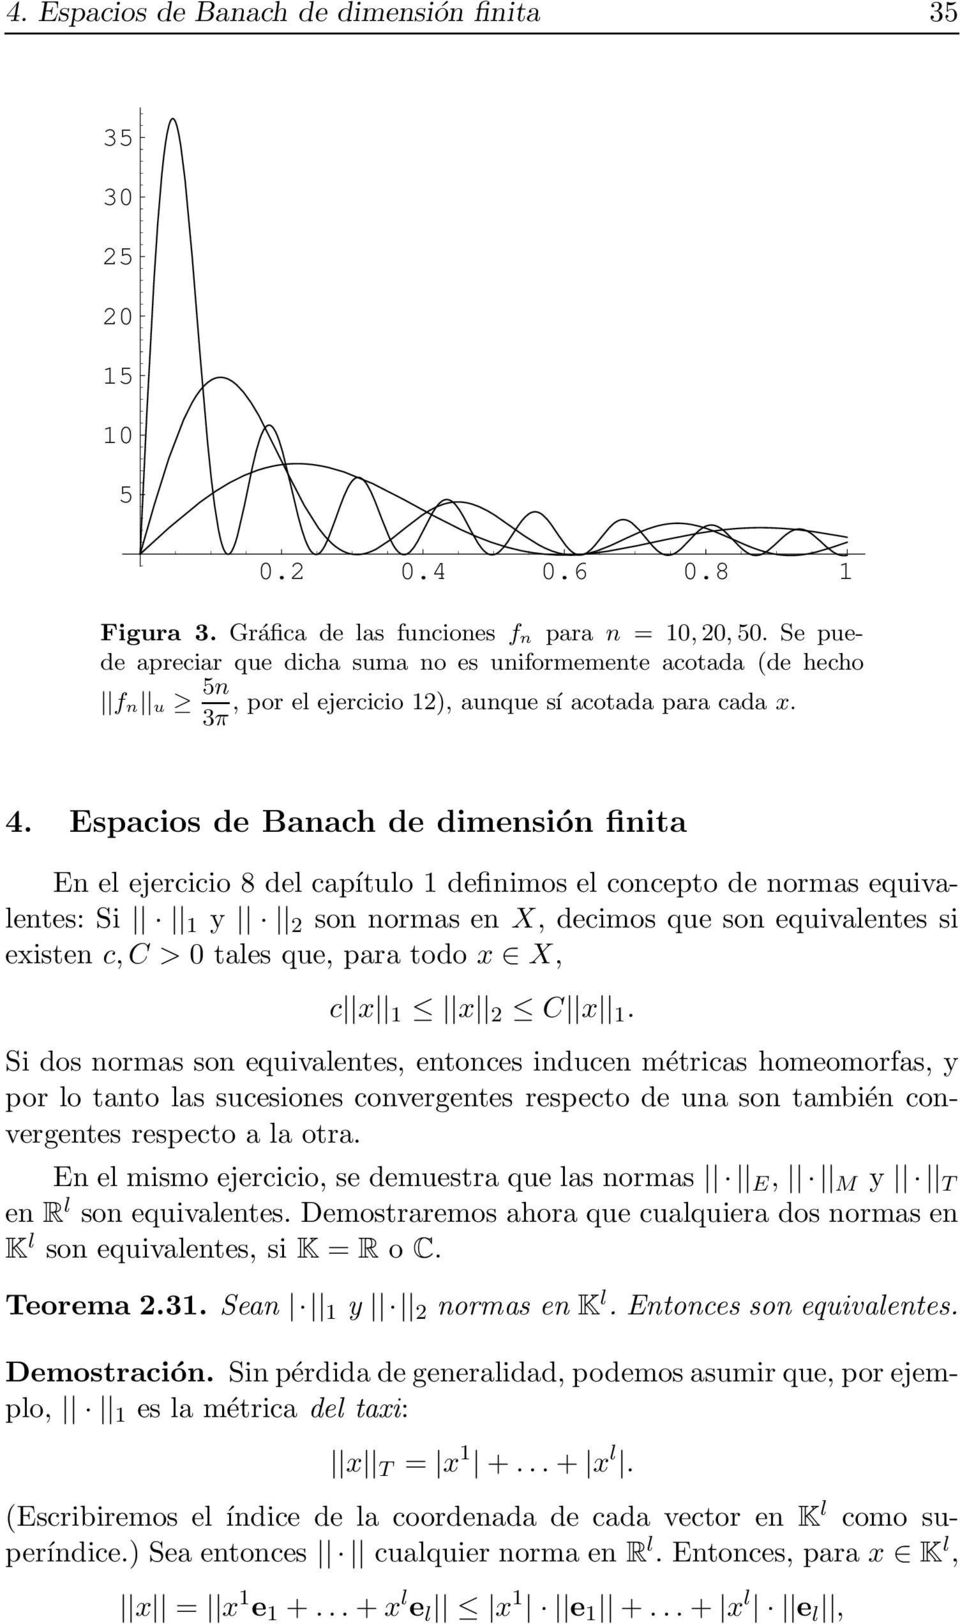 Espacios de Banach de dimensión finita En el ejercicio 8 del capítulo 1 definimos el concepto de normas equivalentes: Si 1 y 2 son normas en X, decimos que son equivalentes si existen c,c > 0 tales